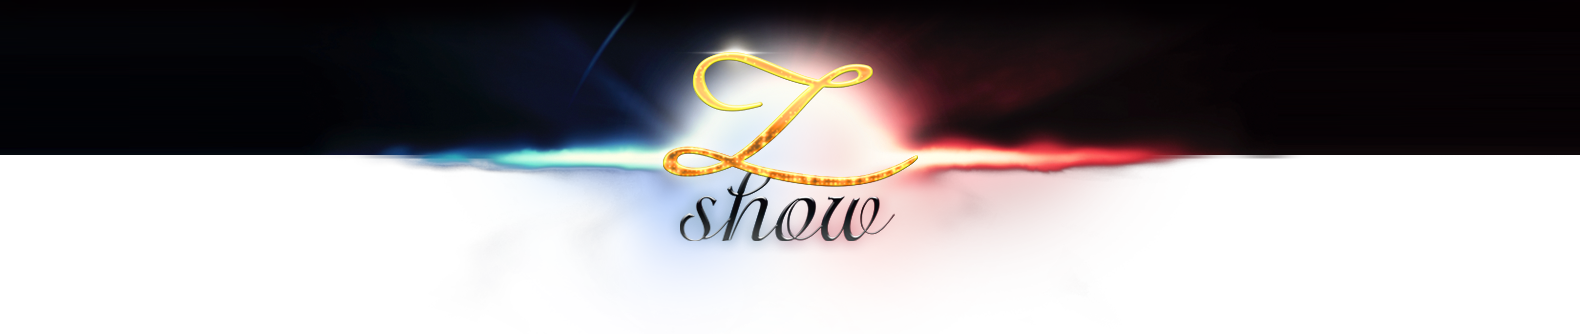 z-show